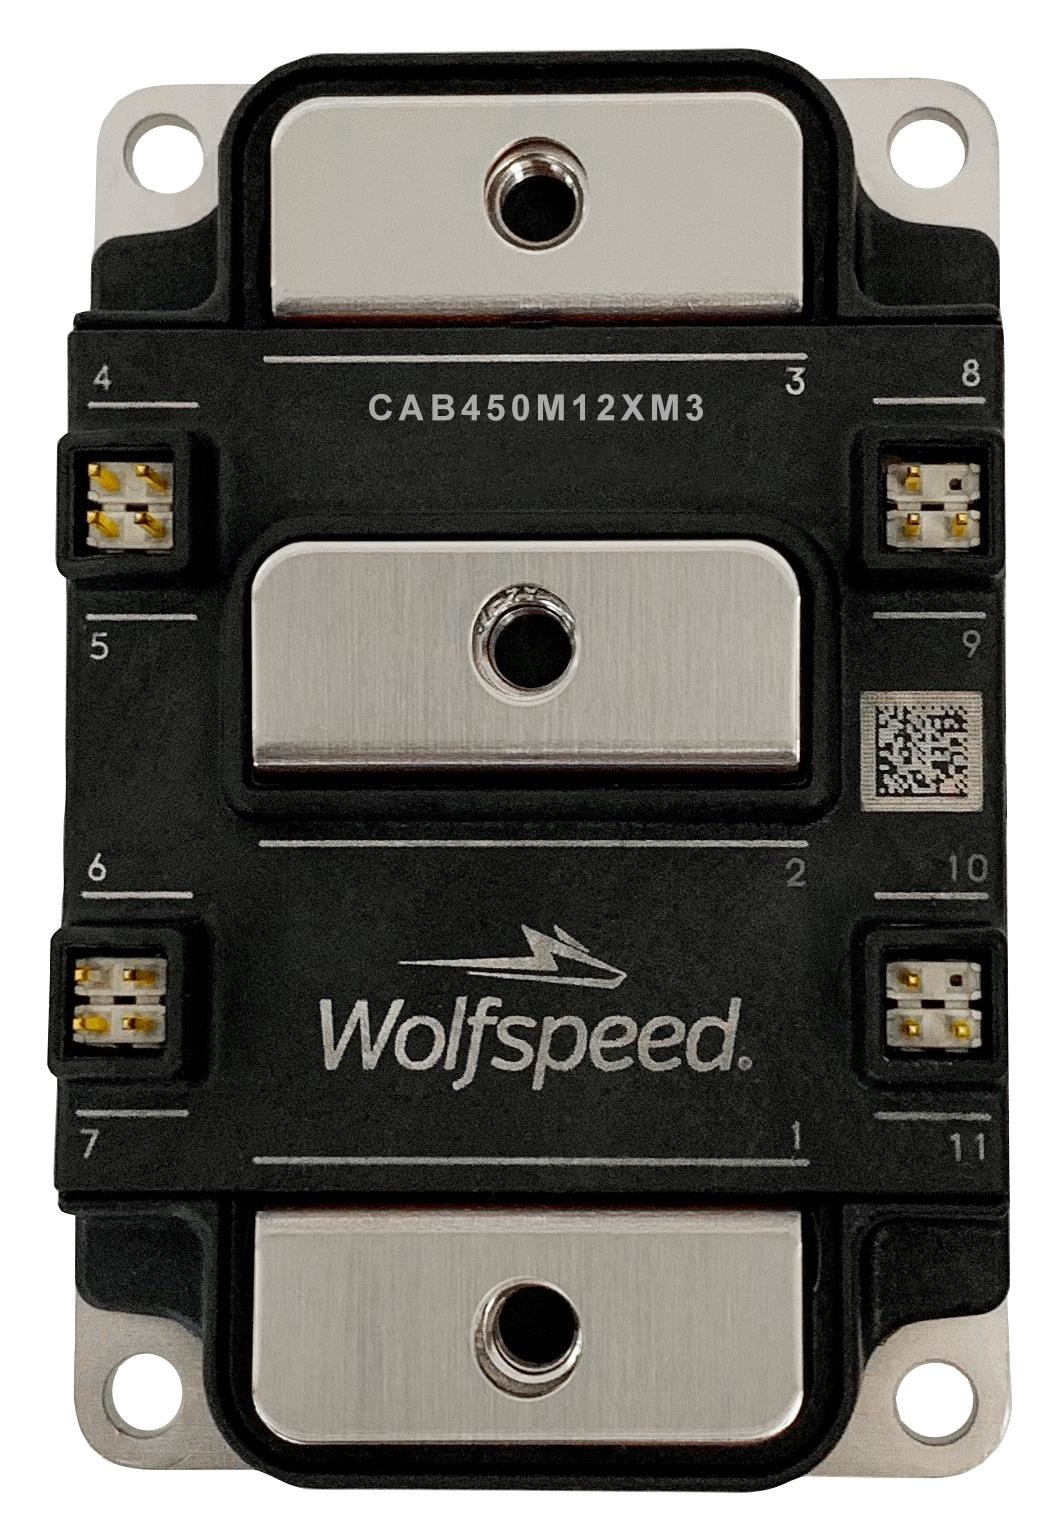 Wolfspeed Cab450M12Xm3 Mosfet Module, Dual N Ch, 1.2Kv, 450A